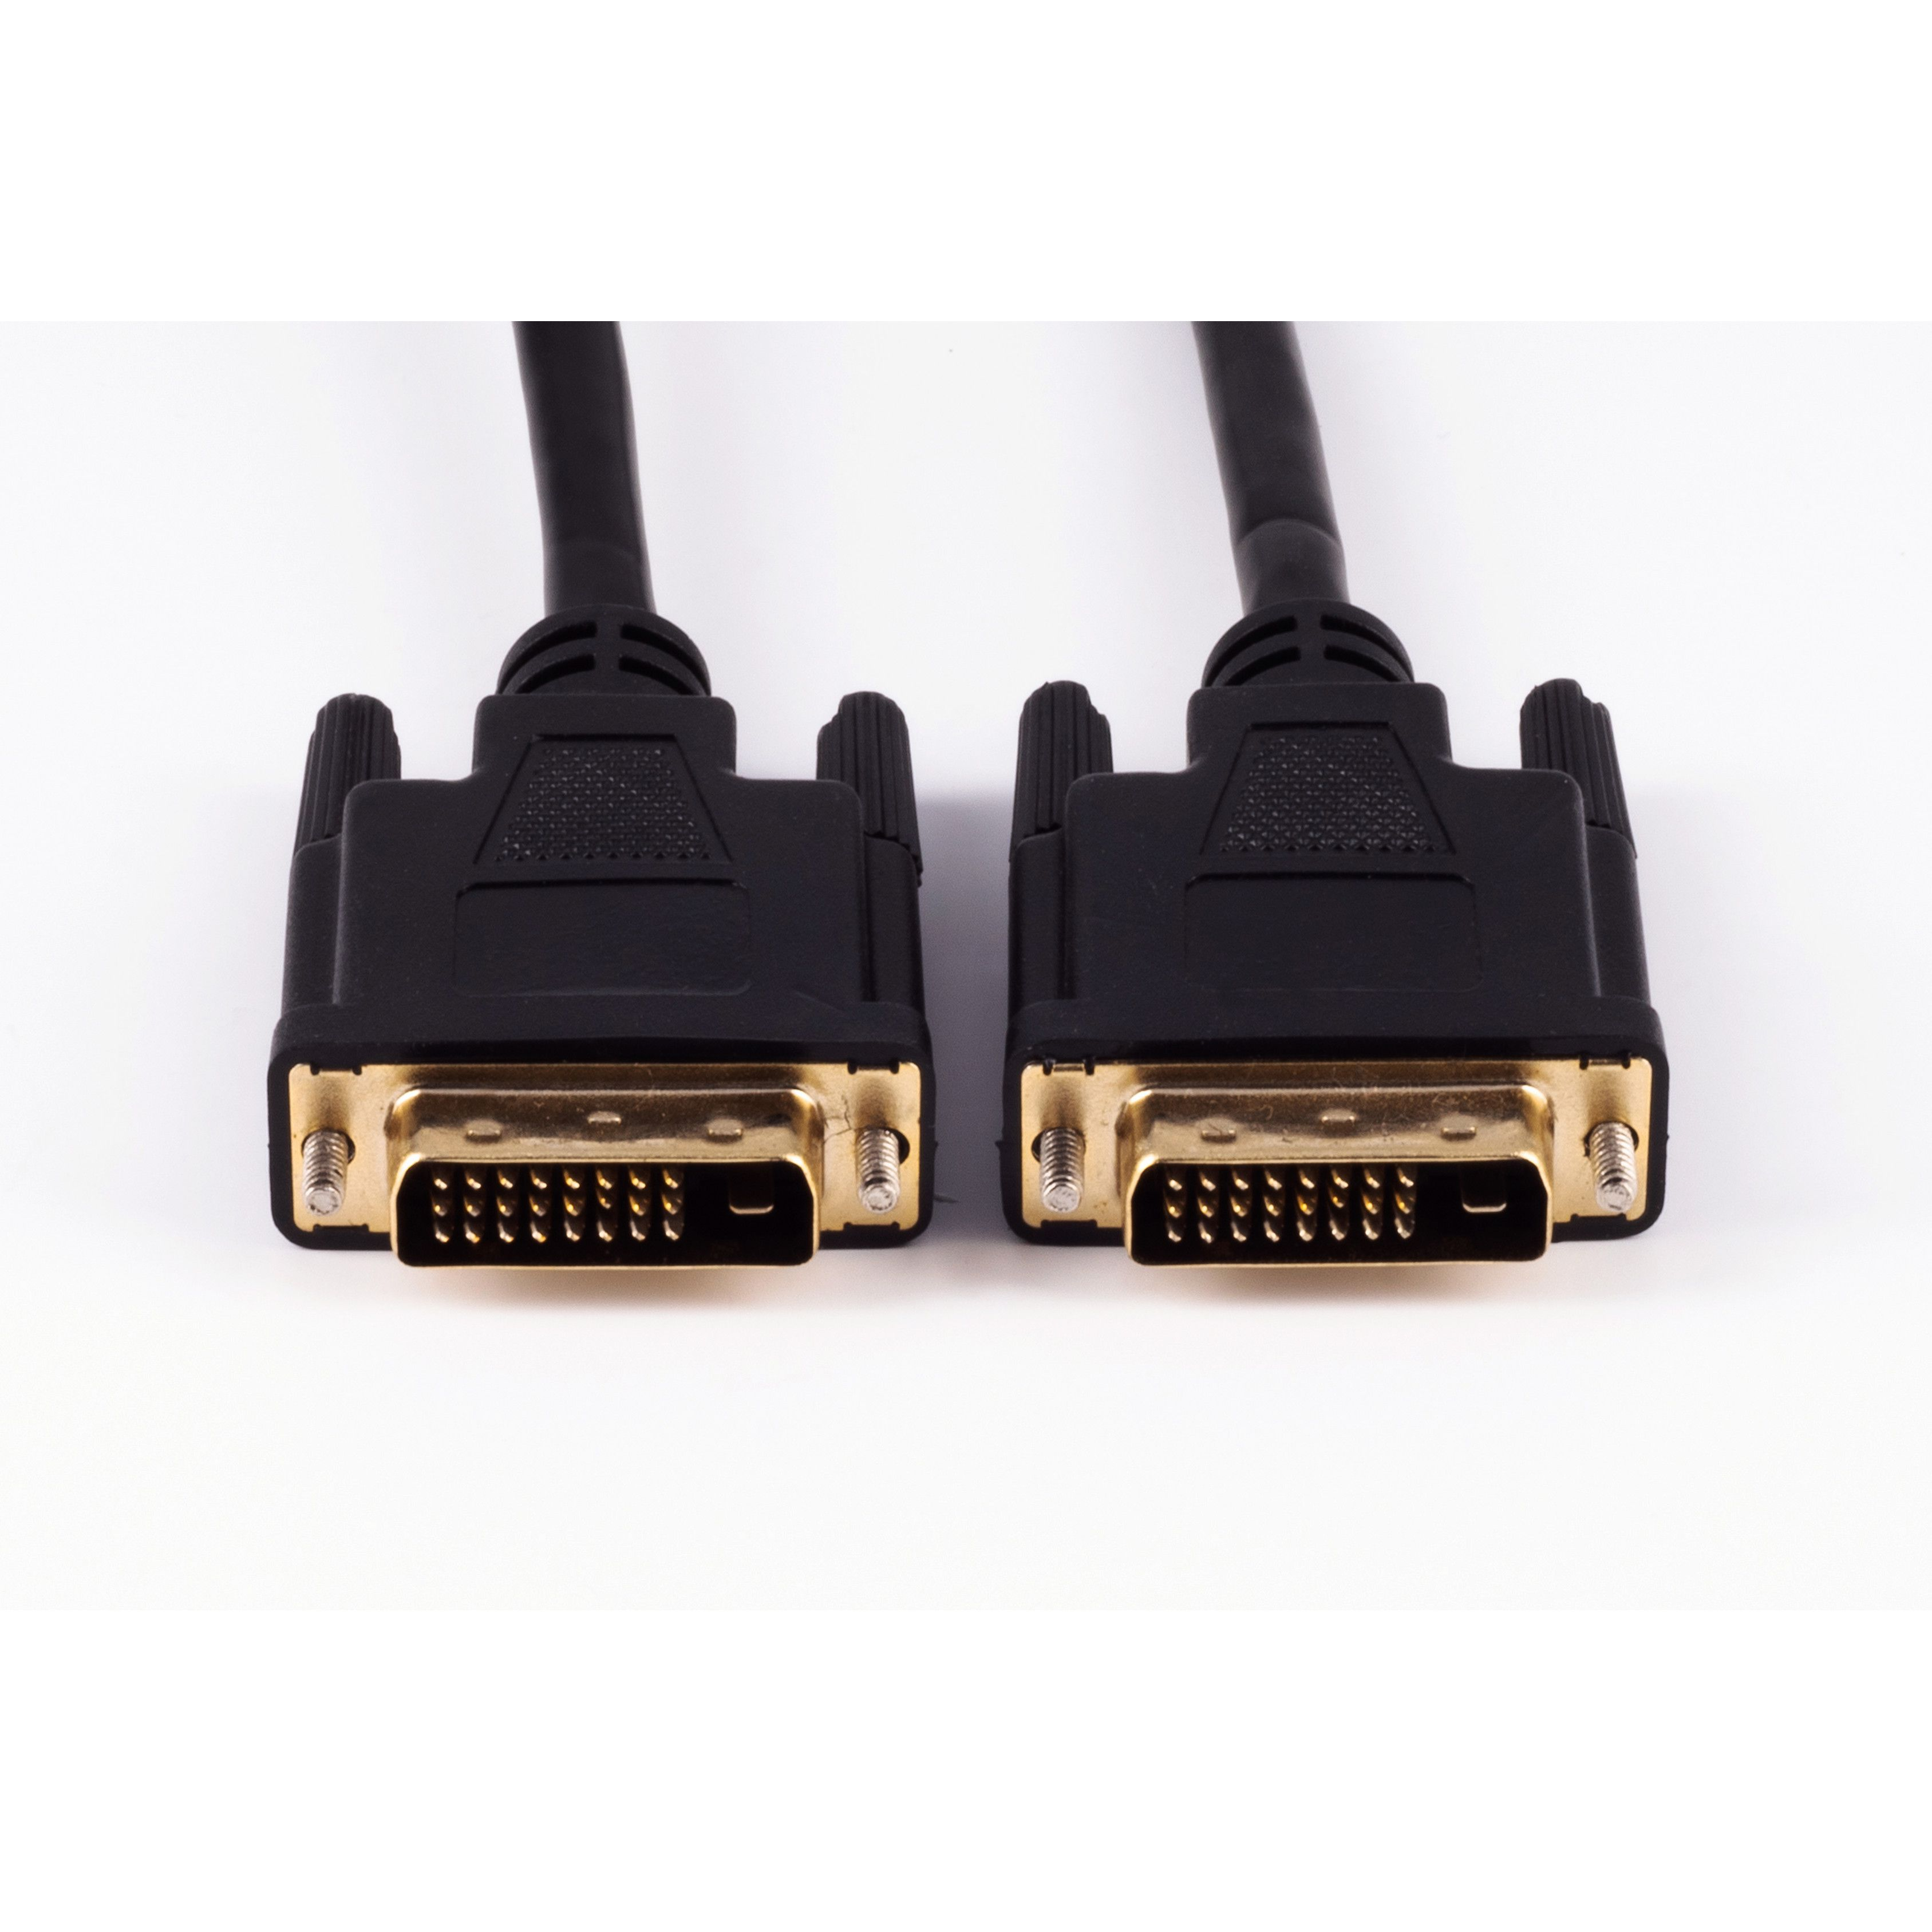 Kabel, m 1m, verg. DVI DVI-D 1 24+1 / St. St DVI-D Dual-Link SHIVERPEAKS